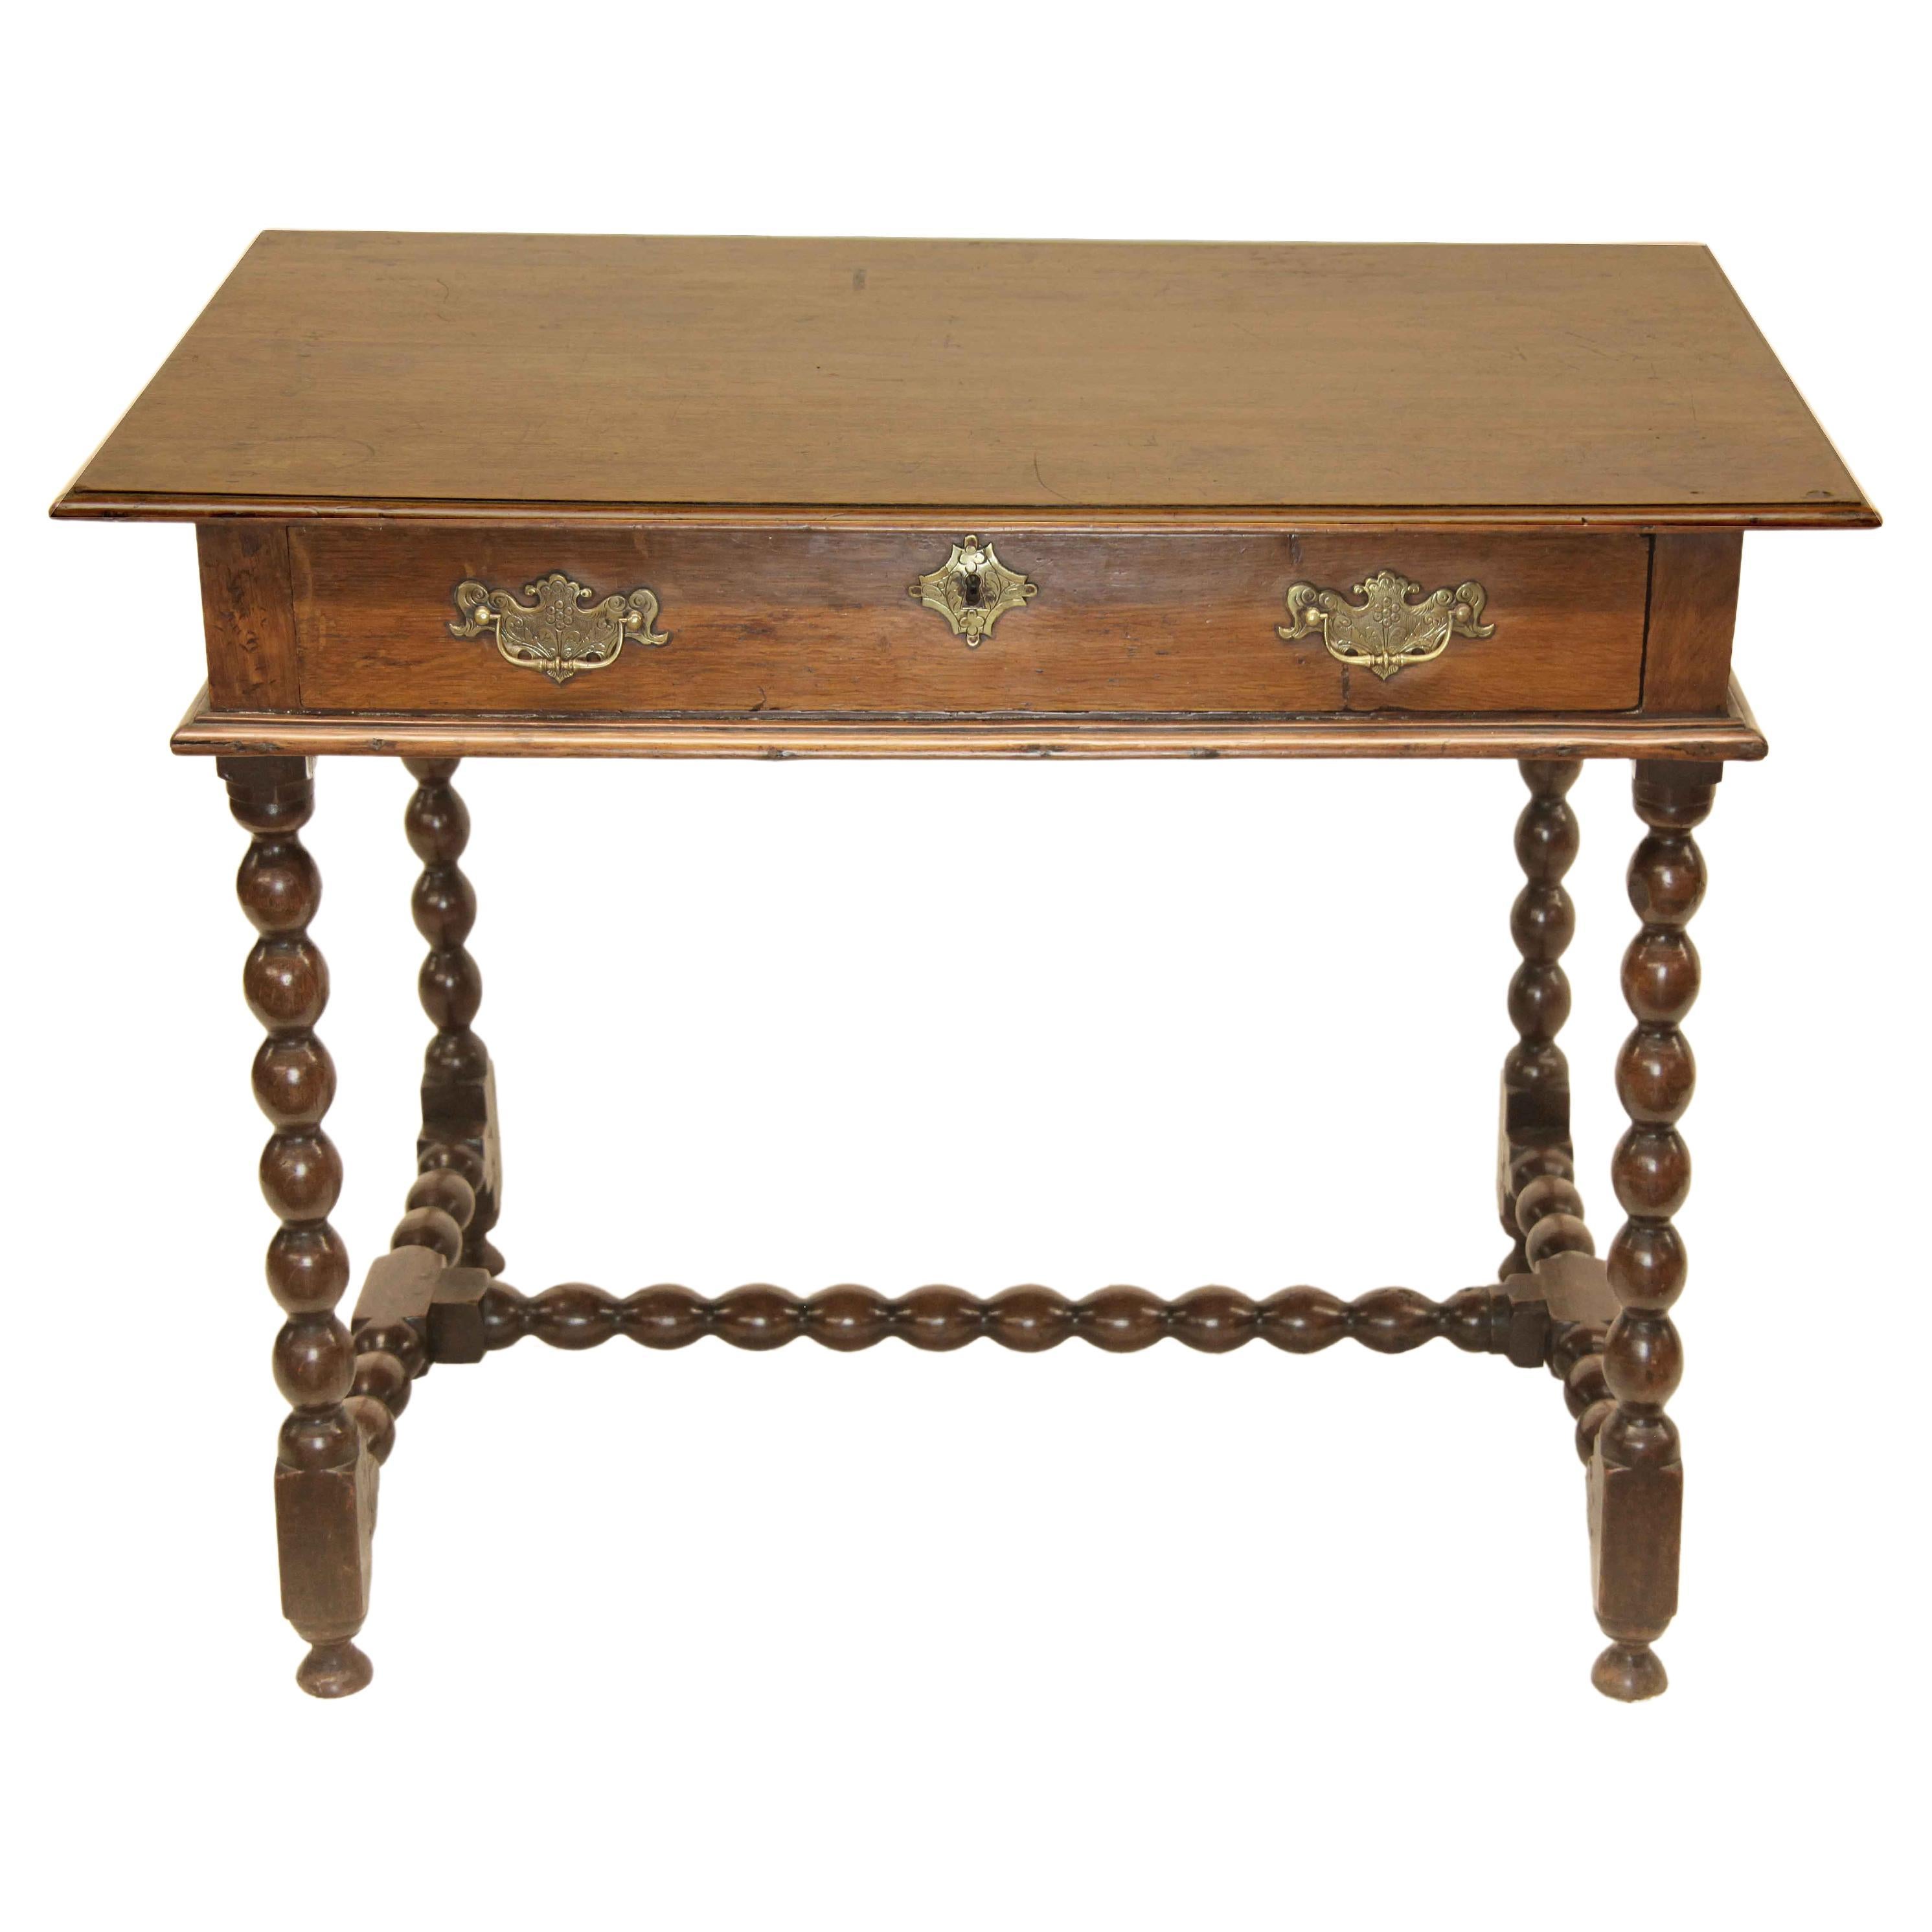 Table d'appoint à un tiroir en chêne du début du XVIIIe siècle